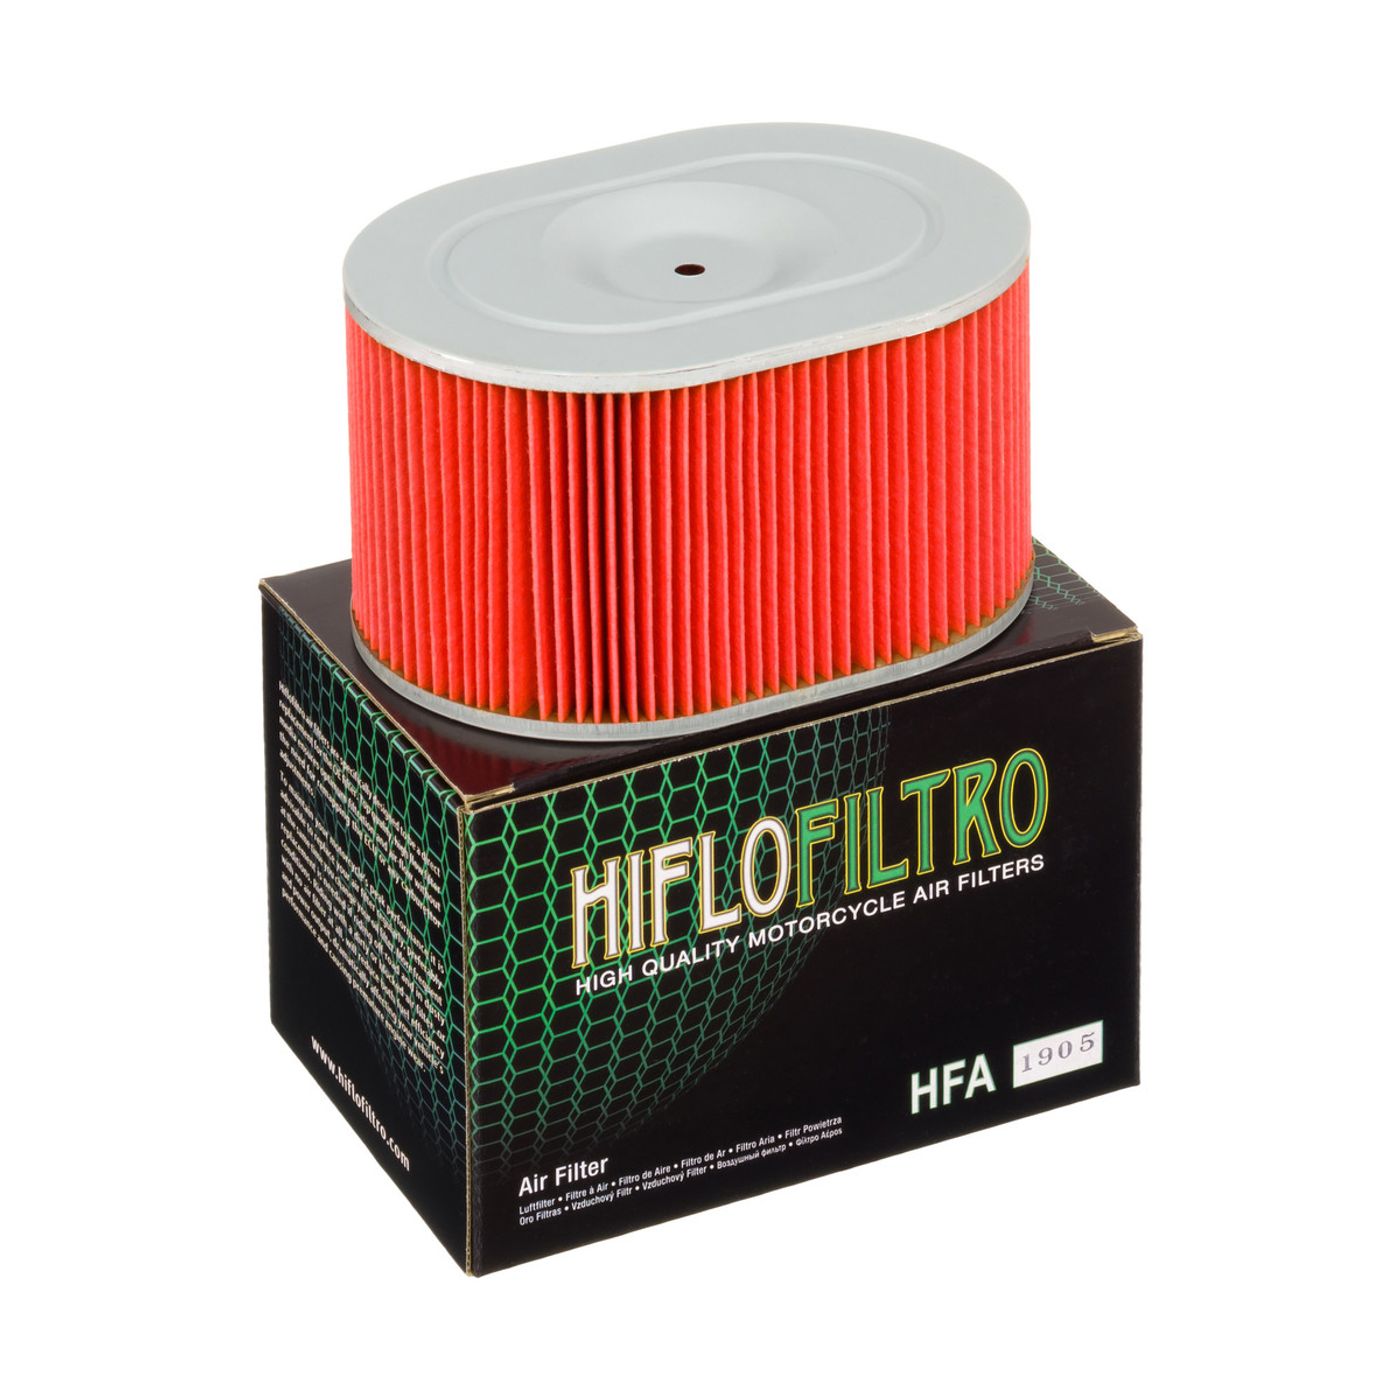 Hiflo Air Filters - HFA1905 image